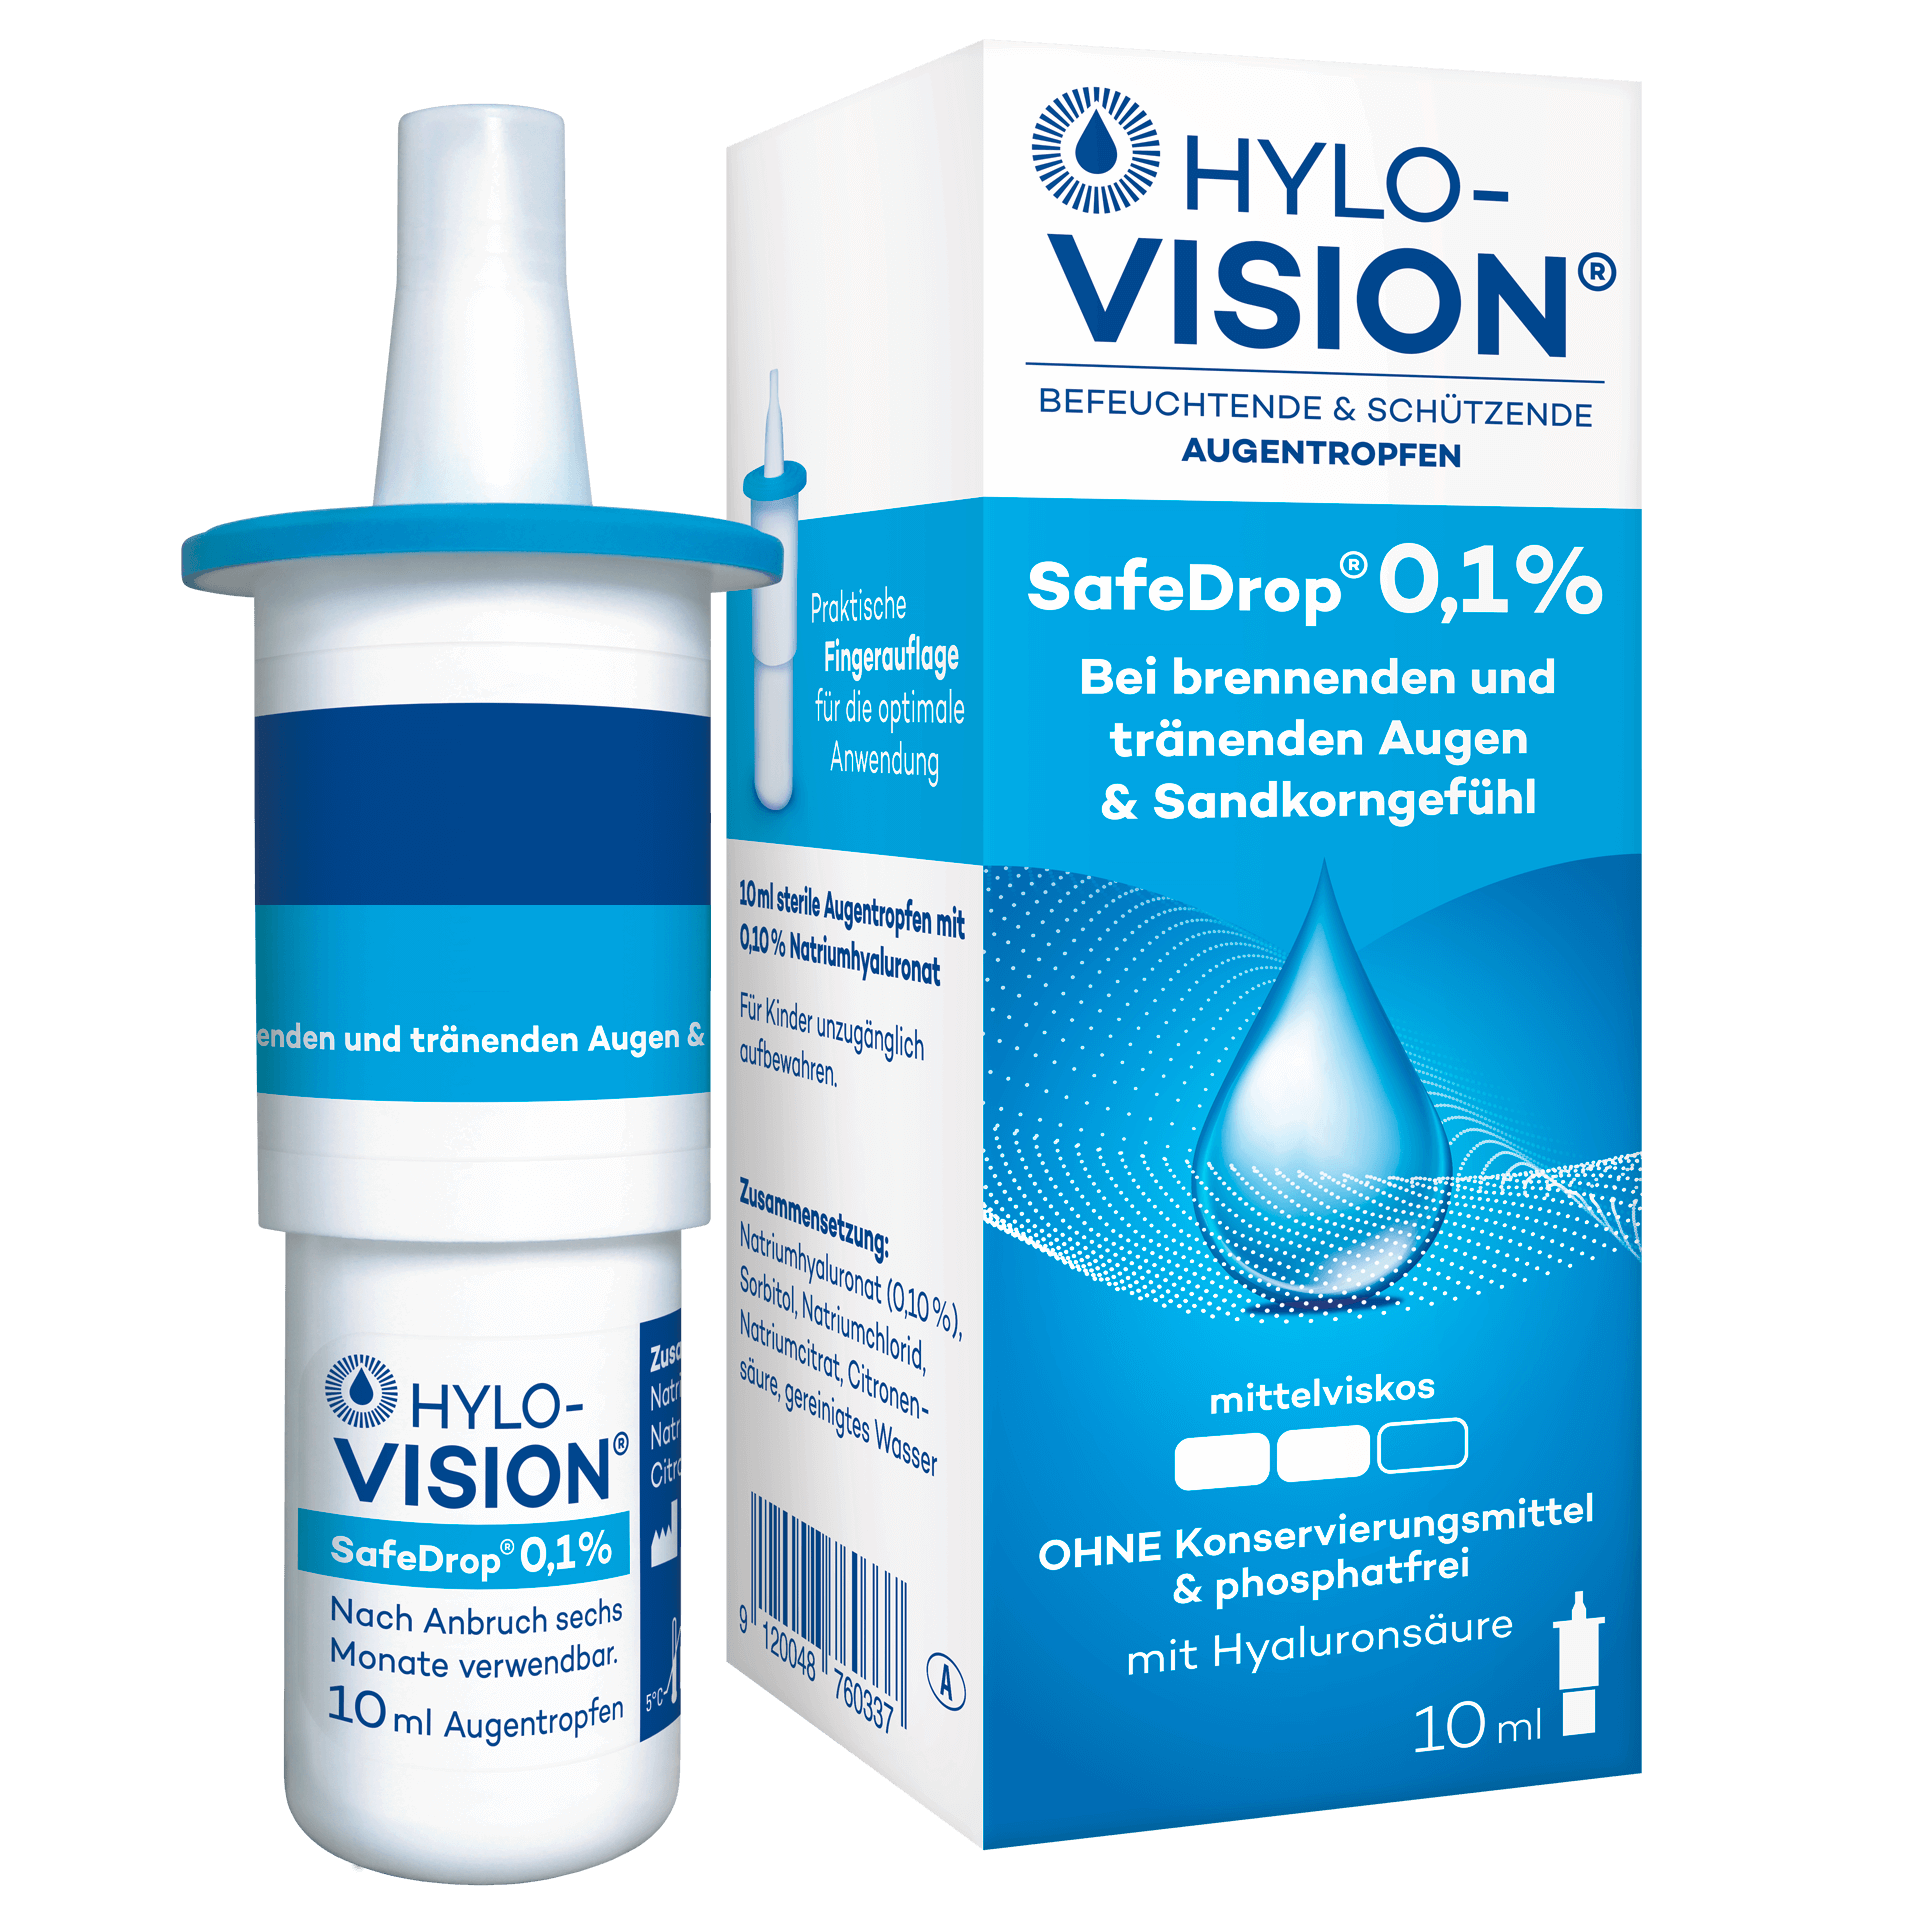 Hylo-Vision SafeDrop 0.1% pack shot